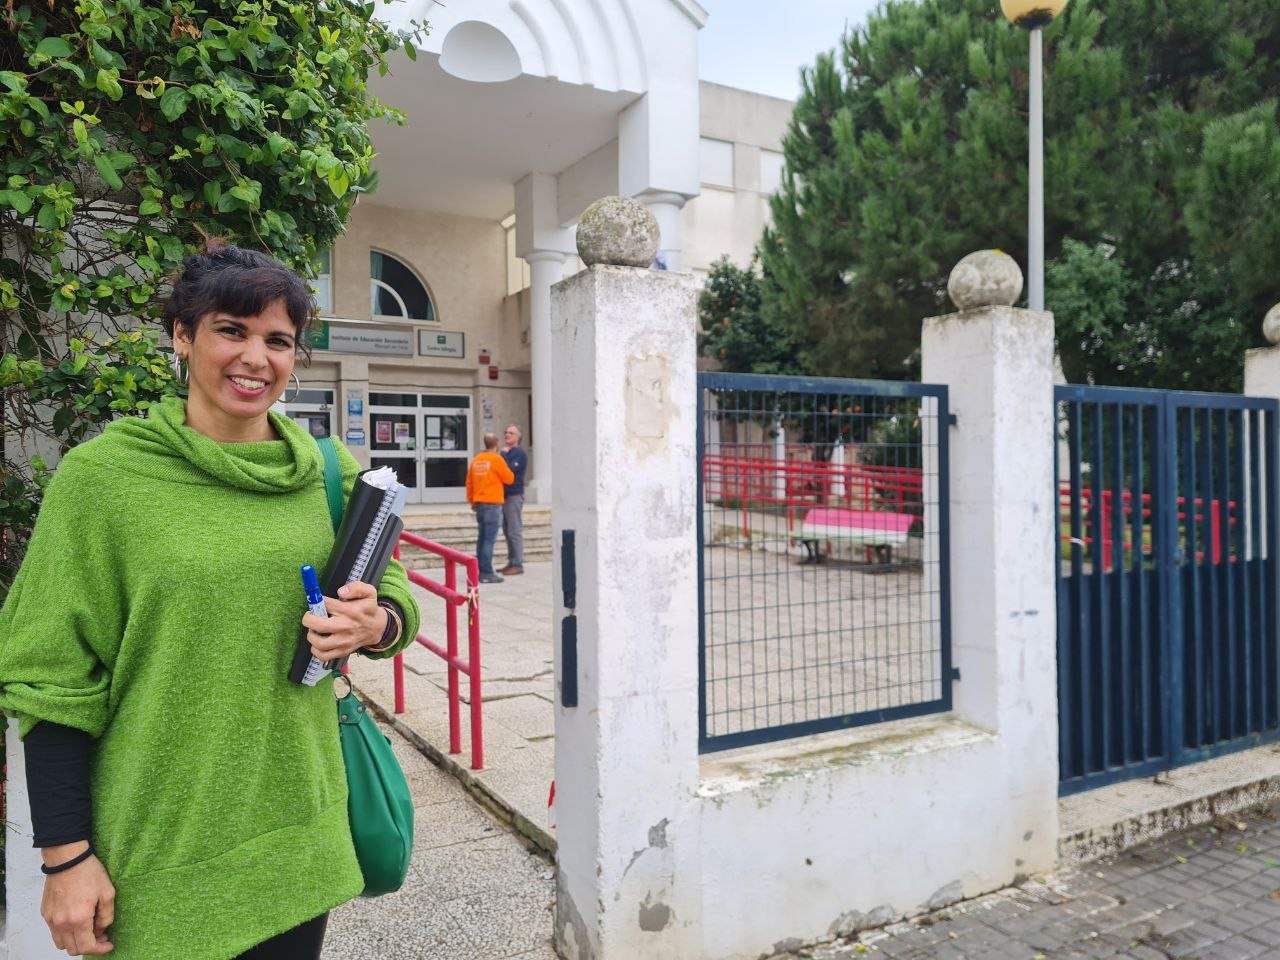 Teresa Rodríguez se incorpora a su plaza de profesora en un instituto público tras dejar su escaño en el Parlamento